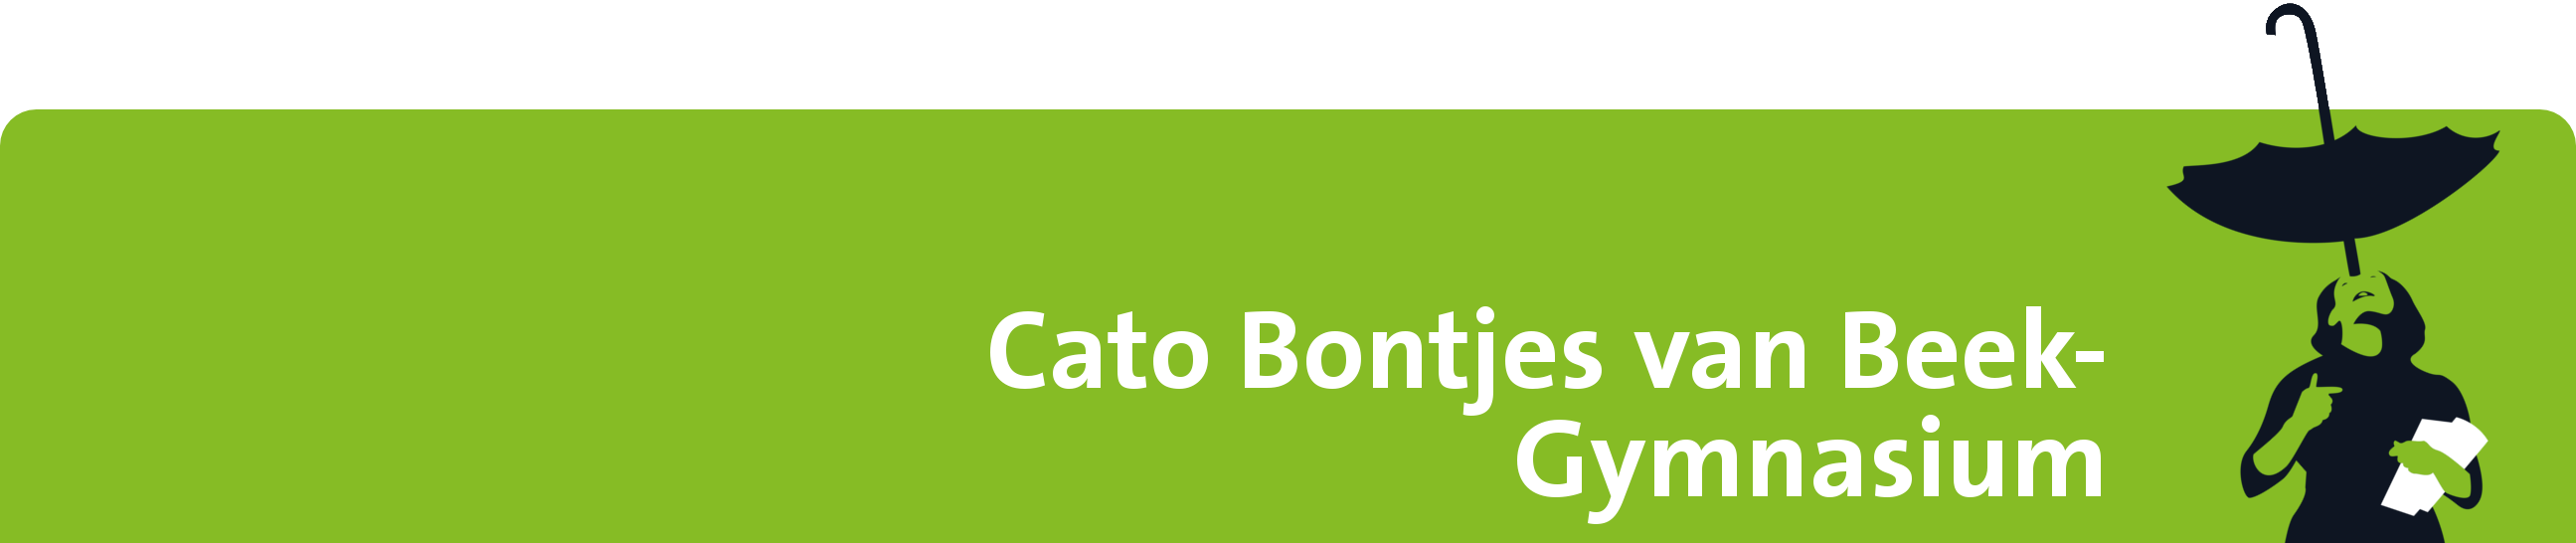 Cato Bontjes van Beek-Gymnasium Logo